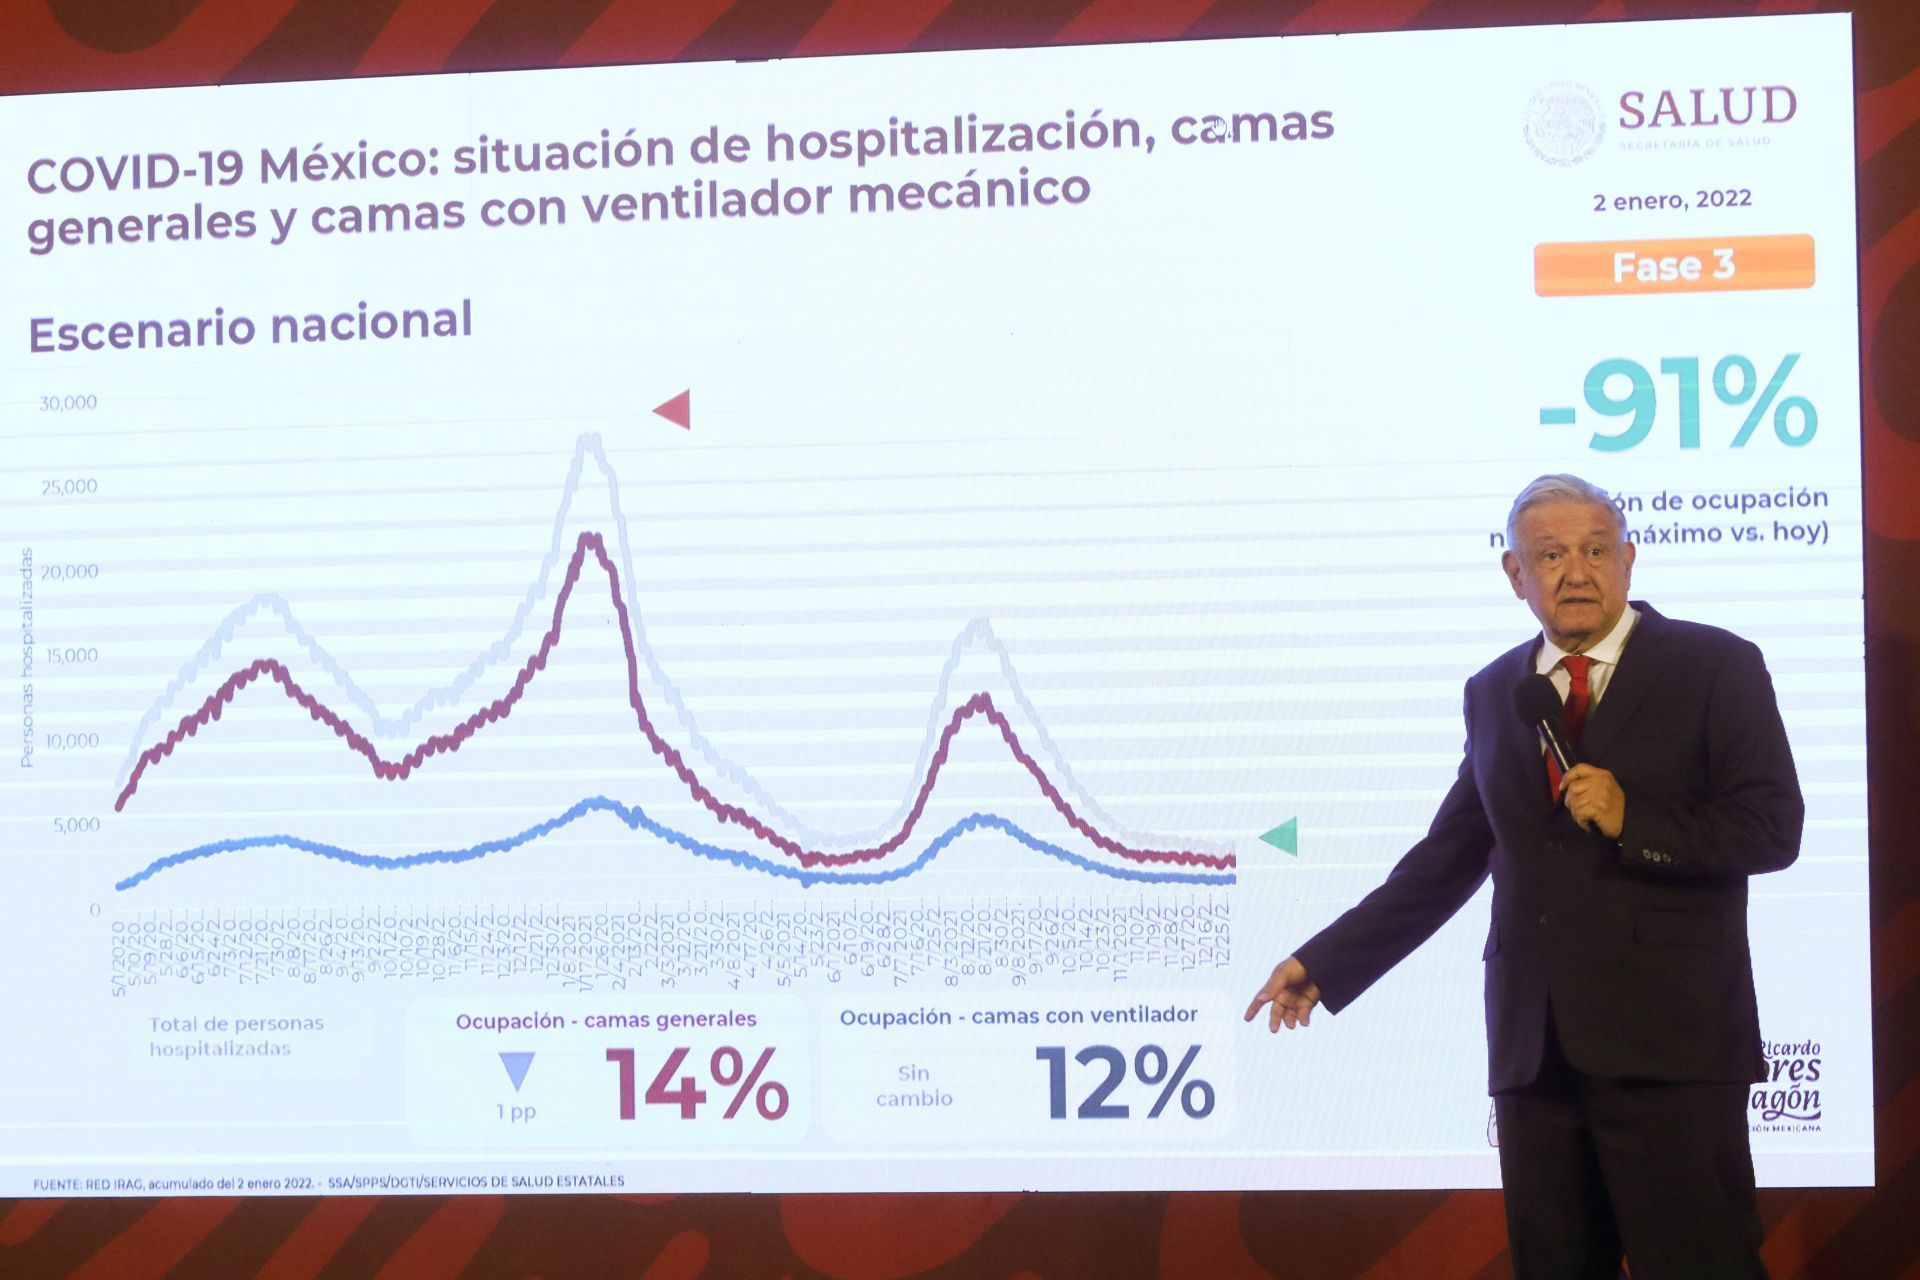 El presidente López Obrador anunció “Hoy nos presentaron la situación hospitalaria de cuantos hospitalizados hay” Aseguró que la cifra registrada el día de ayer fue de 14%.
(FOTO: MOISÉS PABLO/CUARTOSCURO.COM)